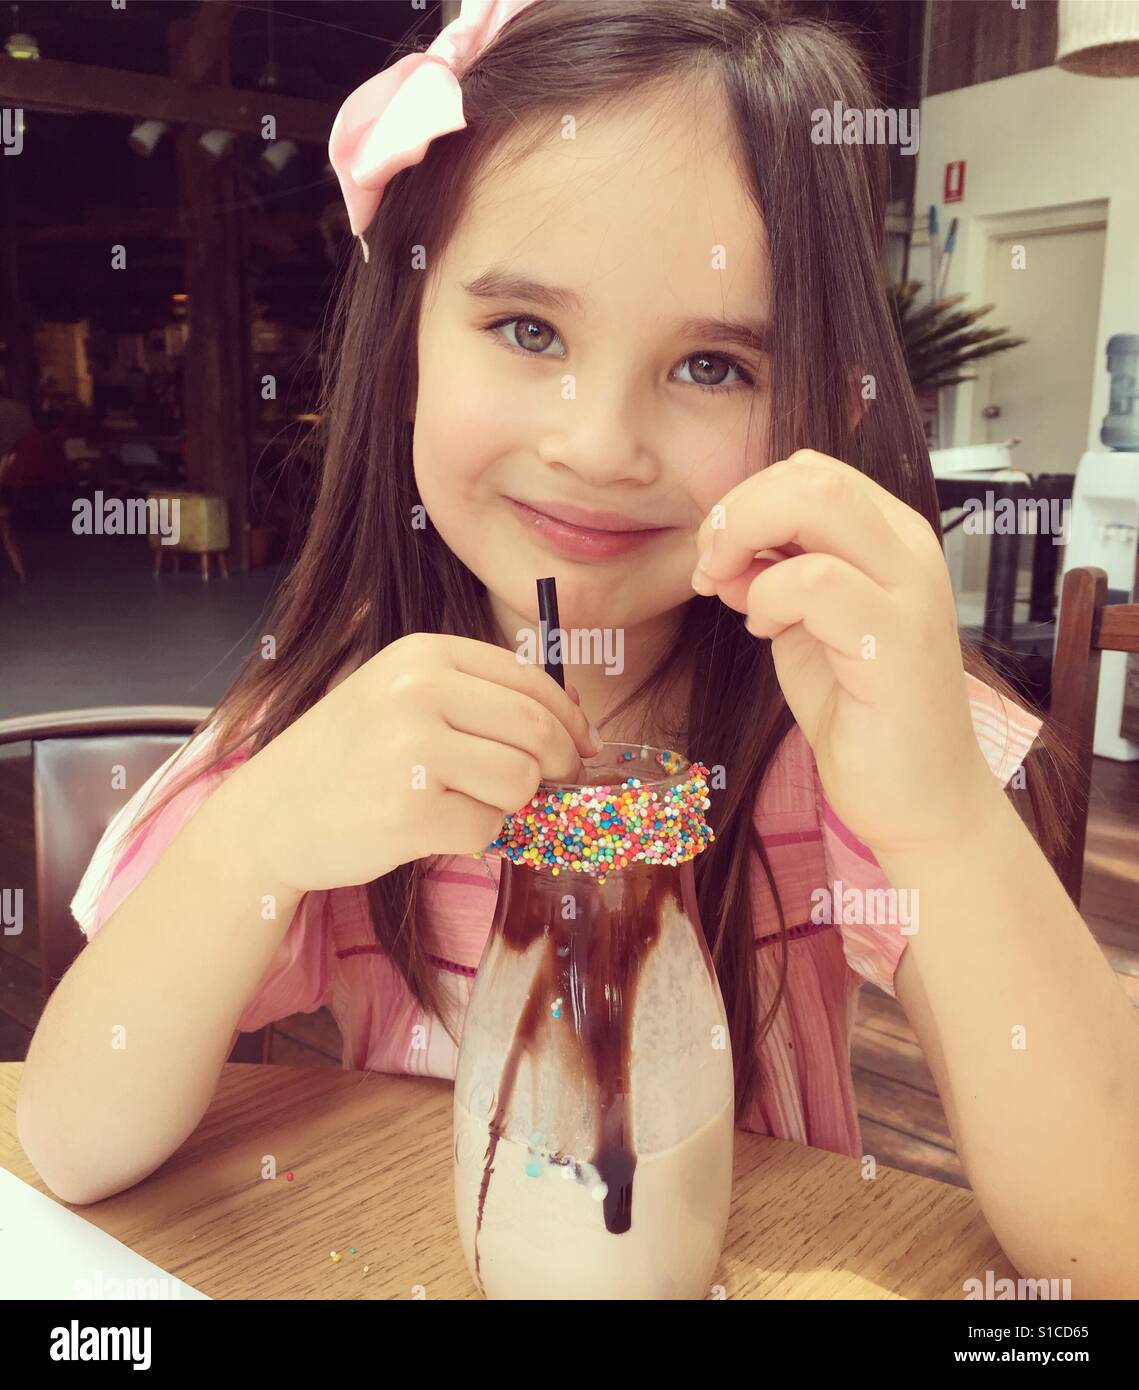 Young girl with milkshake Stock Photo